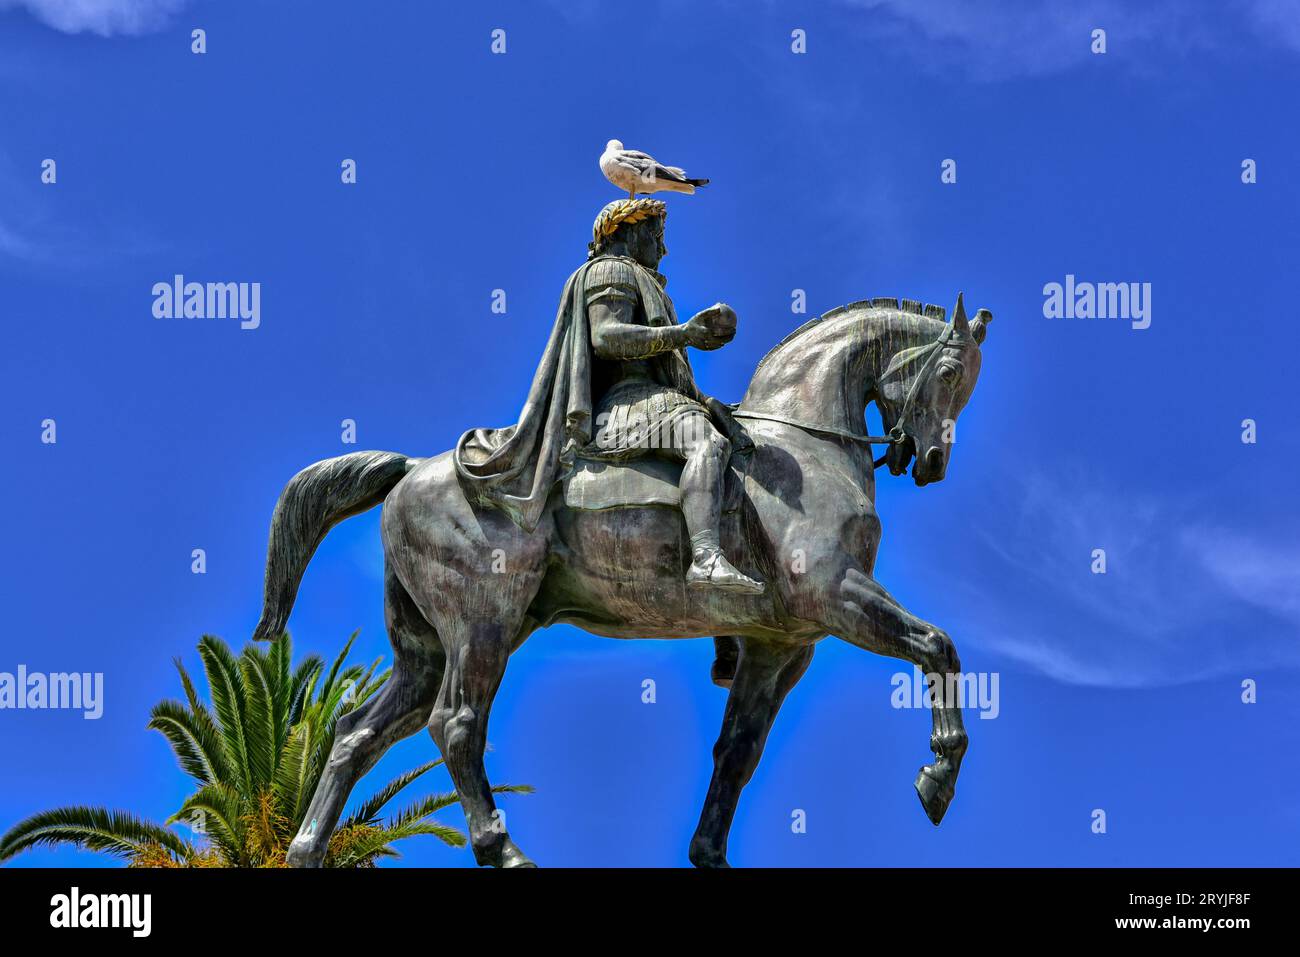 Vogel landete auf der 1865 eingeweihten Reiterstatue Napoleons I. im Denkmal für Napoleon und seine Brüder in Ajaccio, Korsika, Frankreich Stockfoto